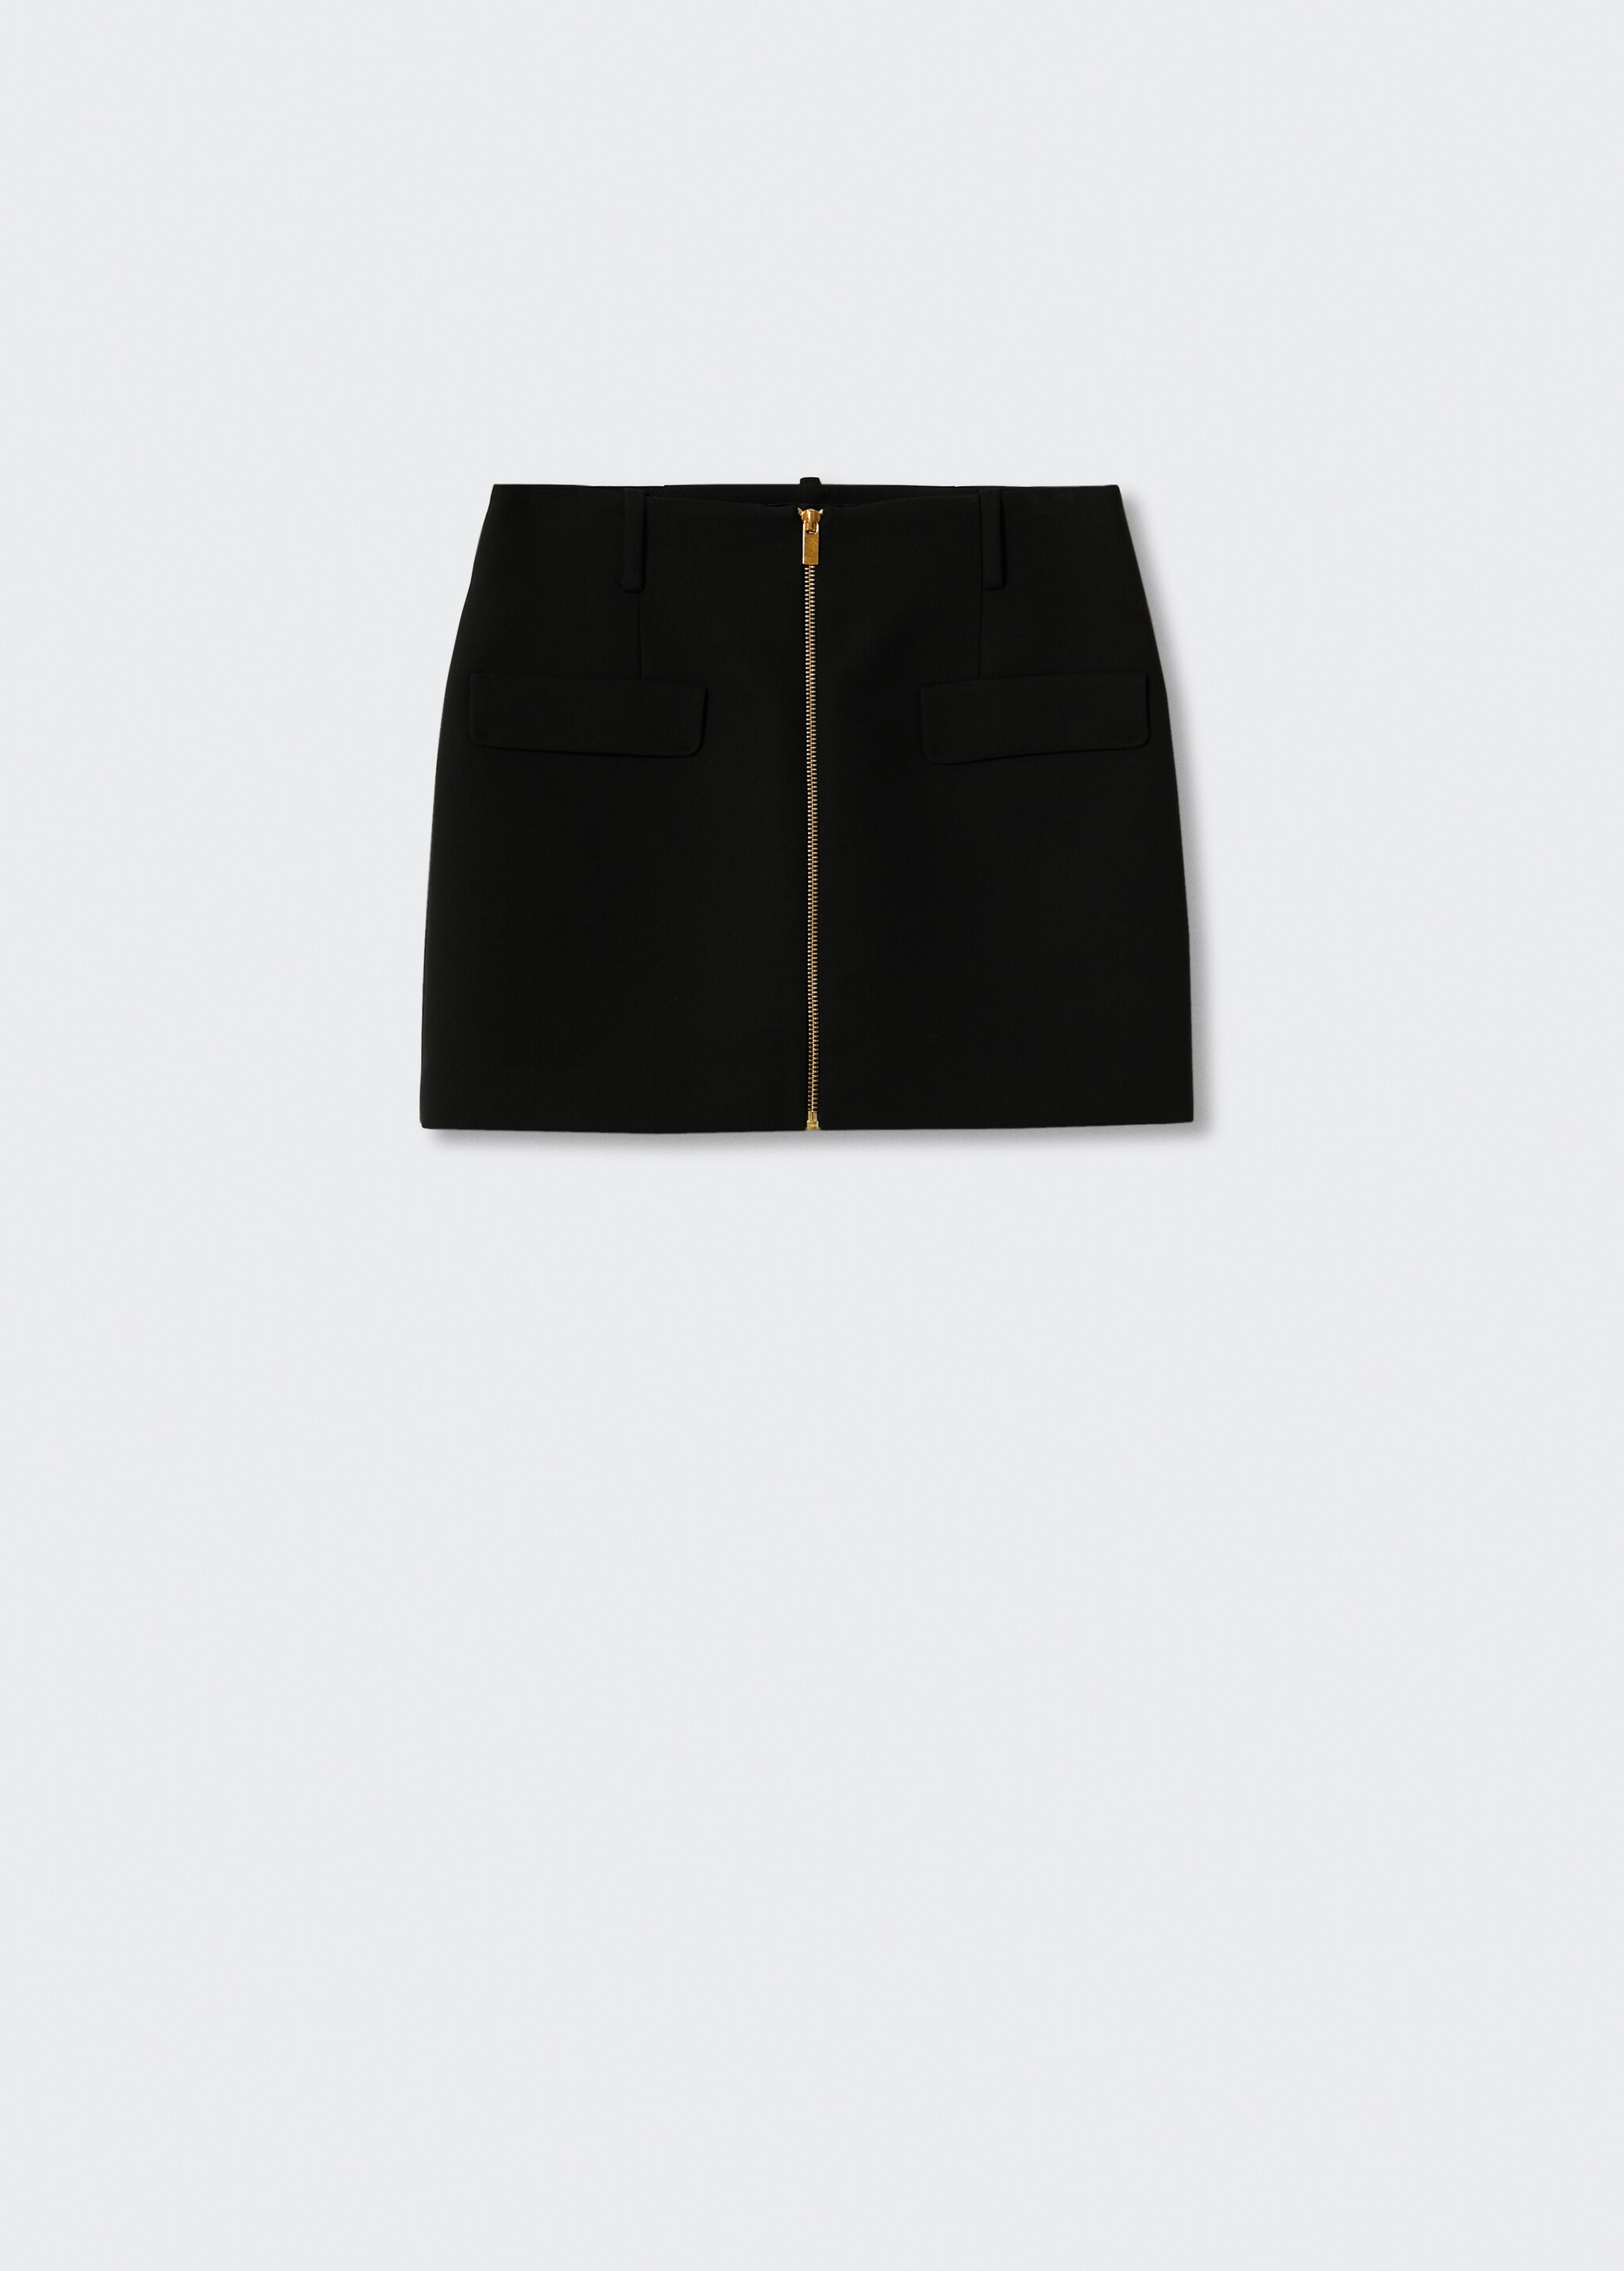 Minifalda cremallera - Artículo sin modelo